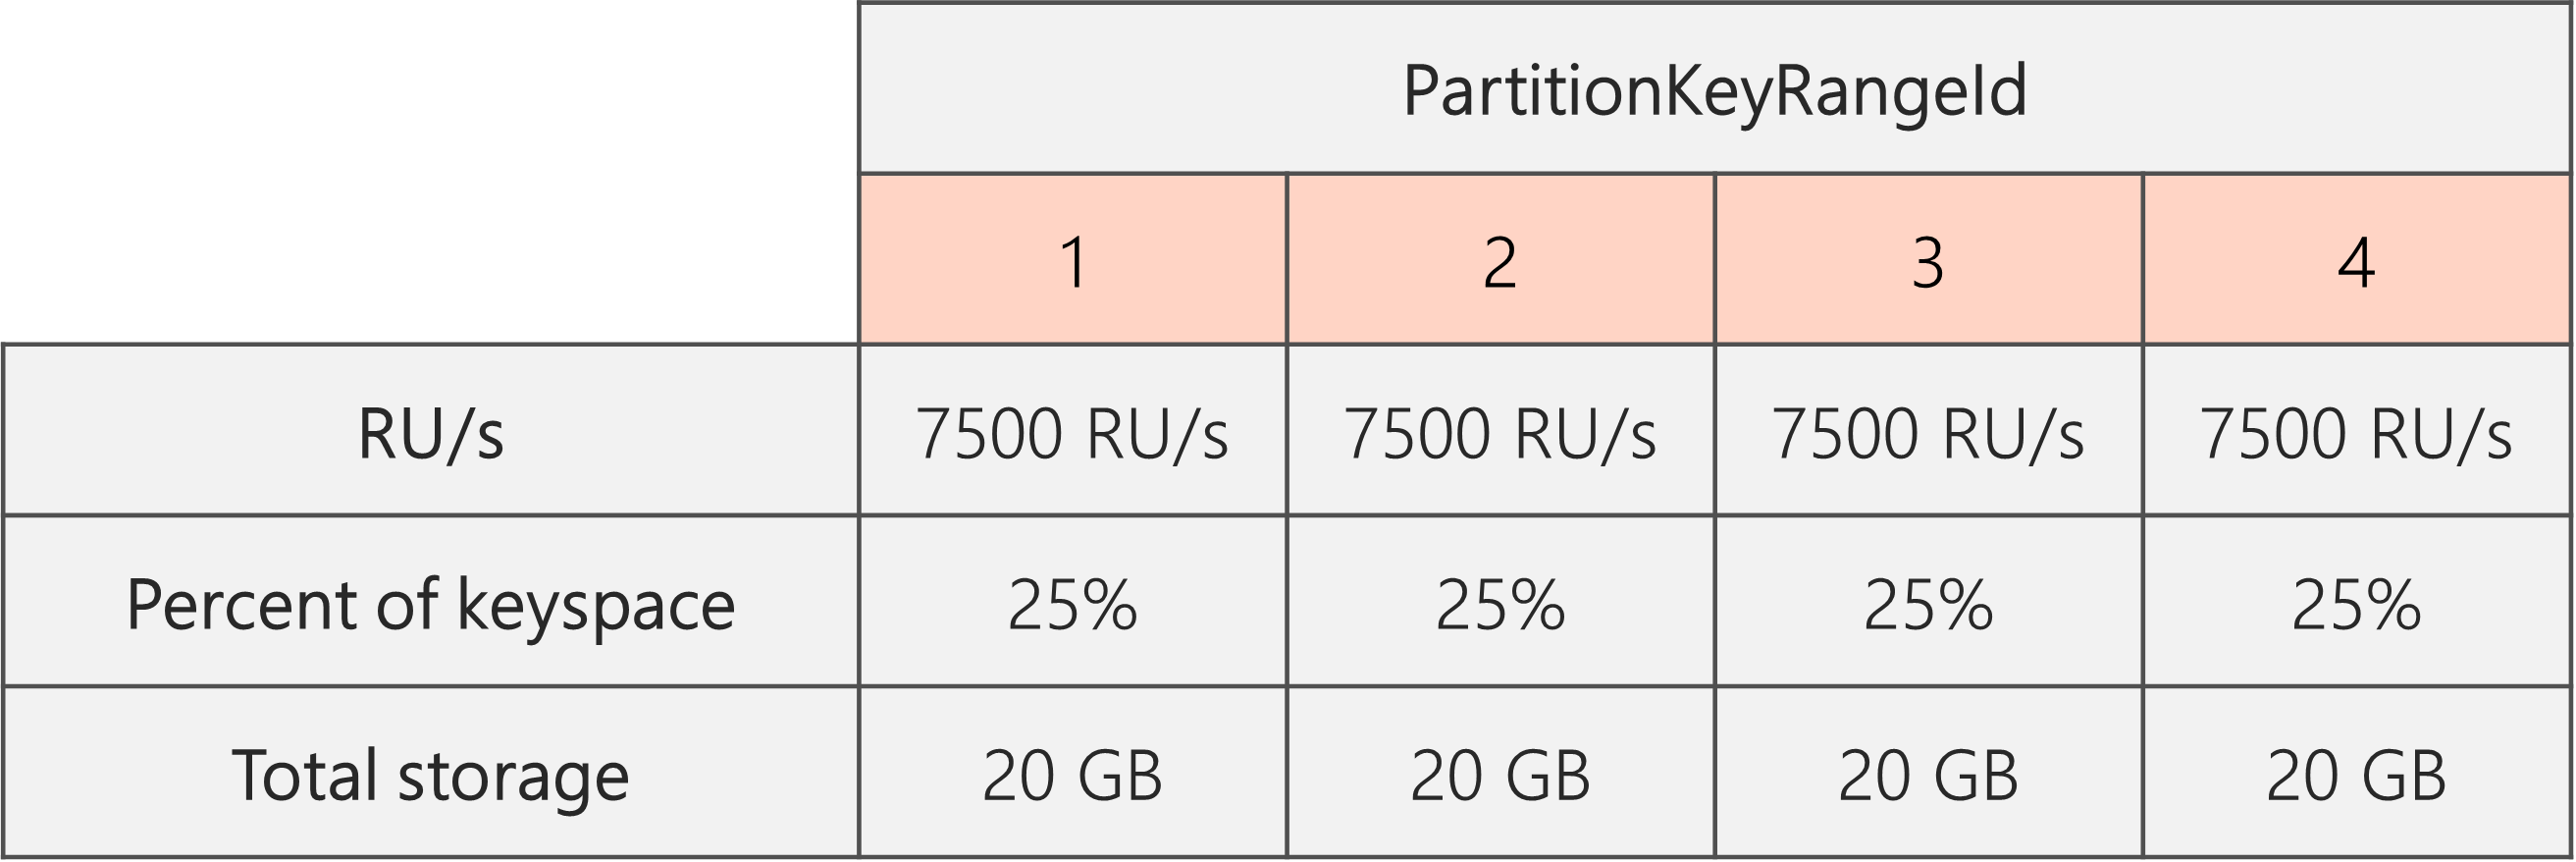 分割が完了し、RU/秒が 40,000 RU/秒から 30,000 RU/秒に下がった後、PartitionKeyRangeId は 4 つ存在し、それぞれ 7500 RU/秒で、合計キースペースの 25% (20 GB) となります